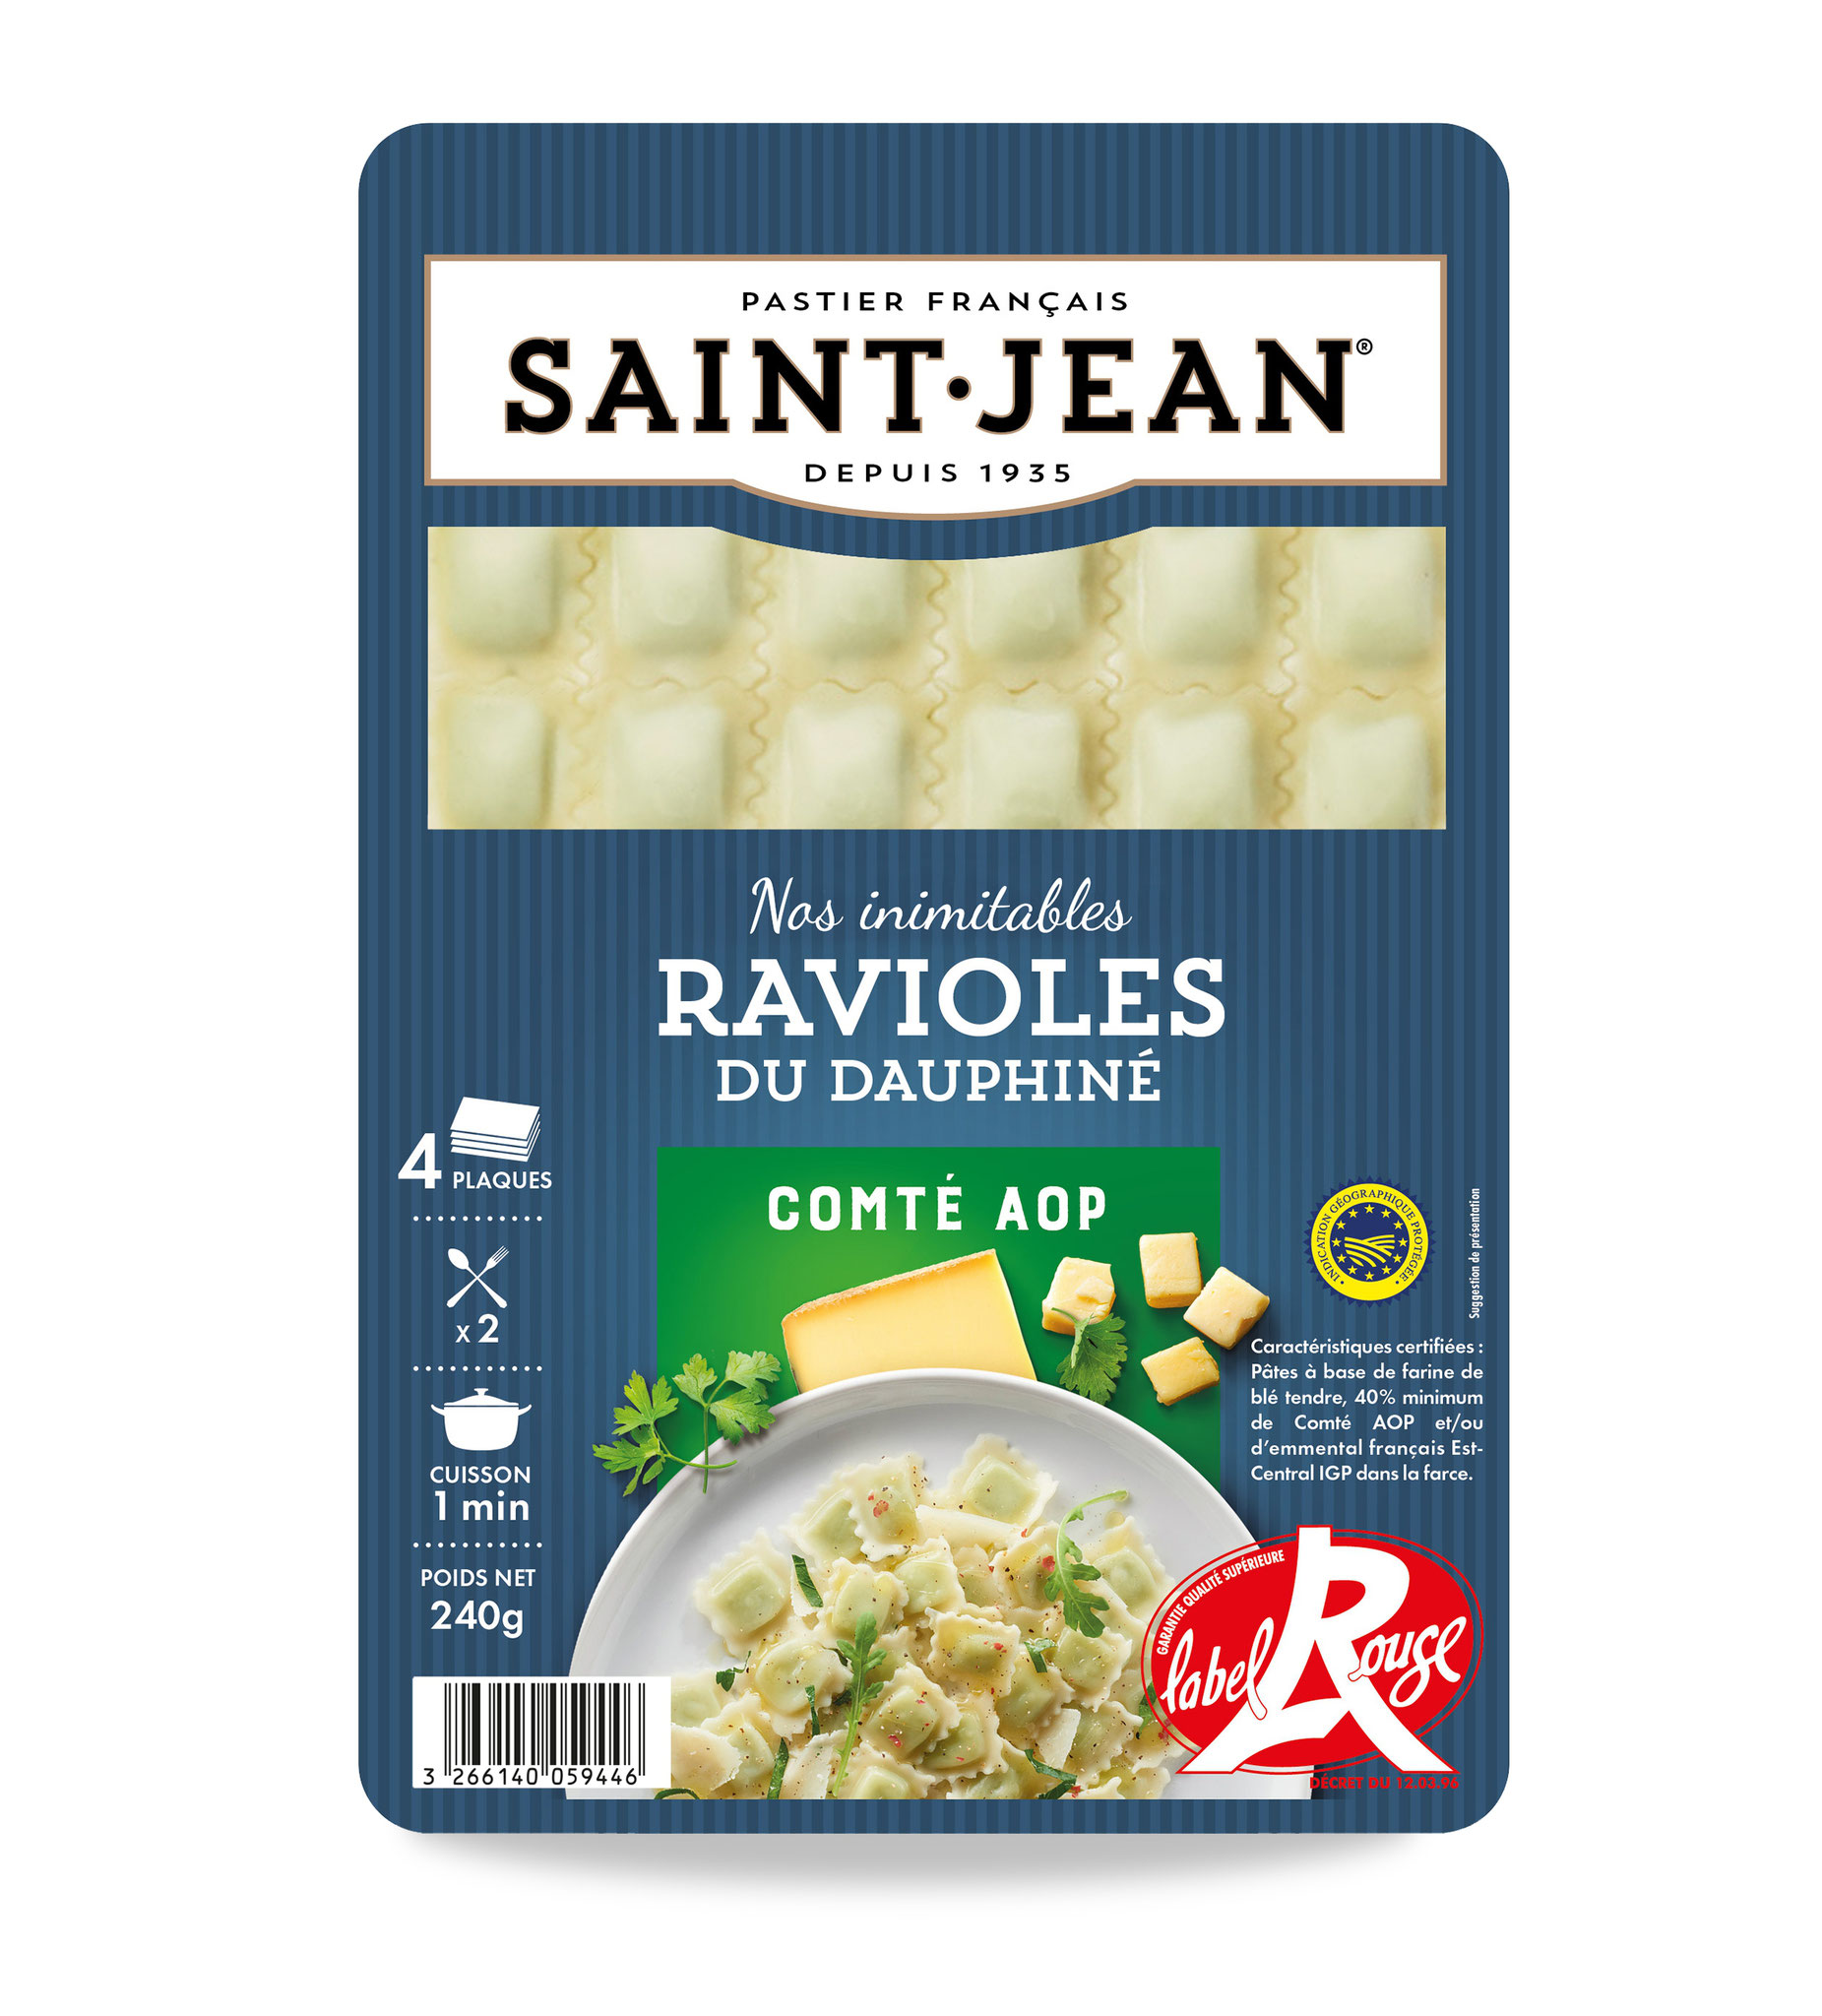 IGP & Label Rouge - La vraie "Raviole", la seule, l’unique, est la raviole du Dauphiné, spécialité de la région de Romans et du Royans, en Drôme. Réalisées avec une pâte ultra fine, un peu transparente, qui cuit en 1 mn seulement.